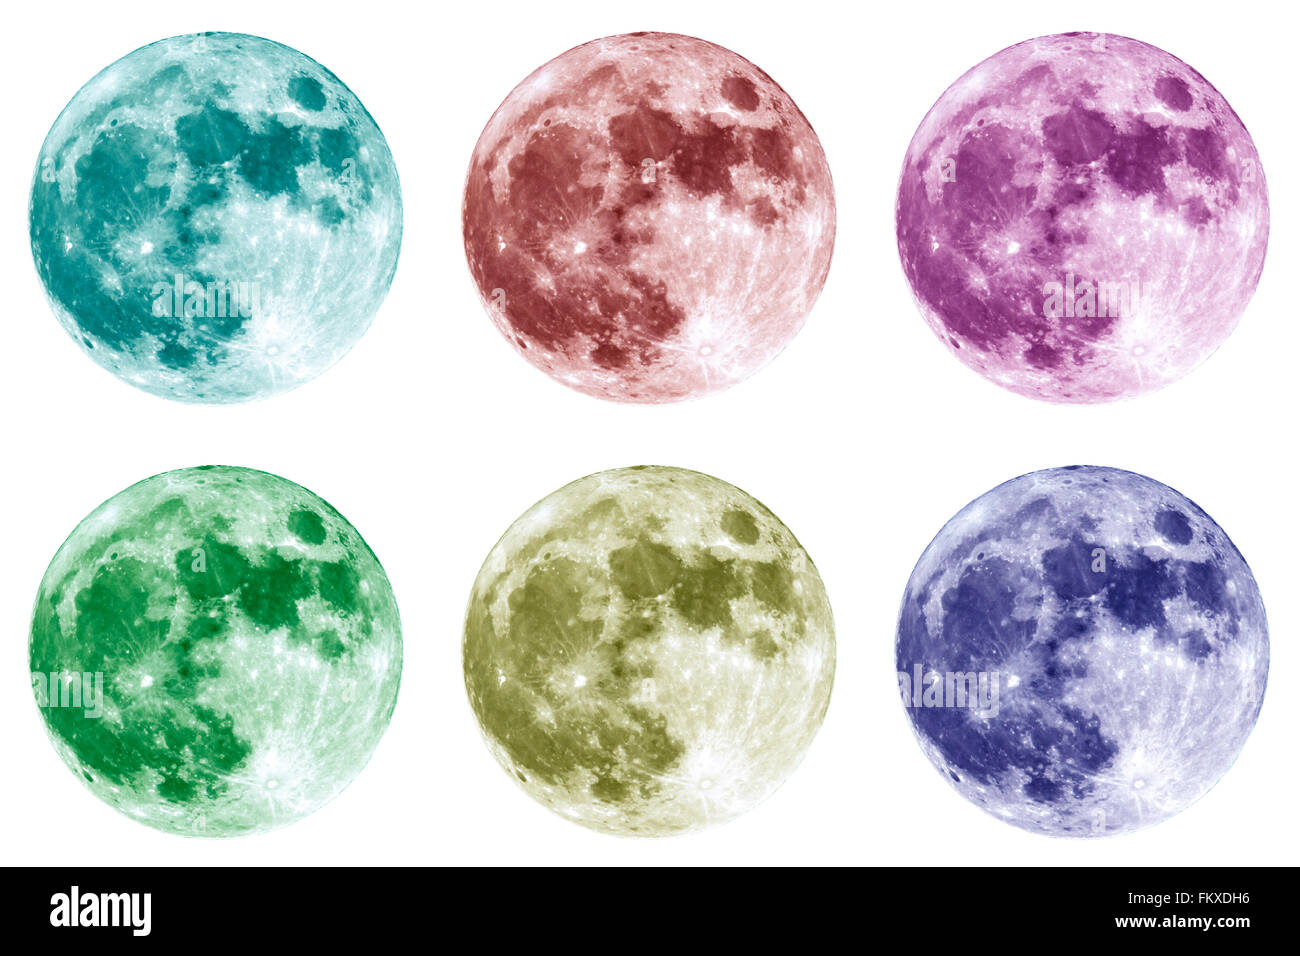 Sei diversi colori collage di la luna piena è visto isolato su uno sfondo bianco. Ad elevato contrasto e risoluzione immagine presa Foto Stock